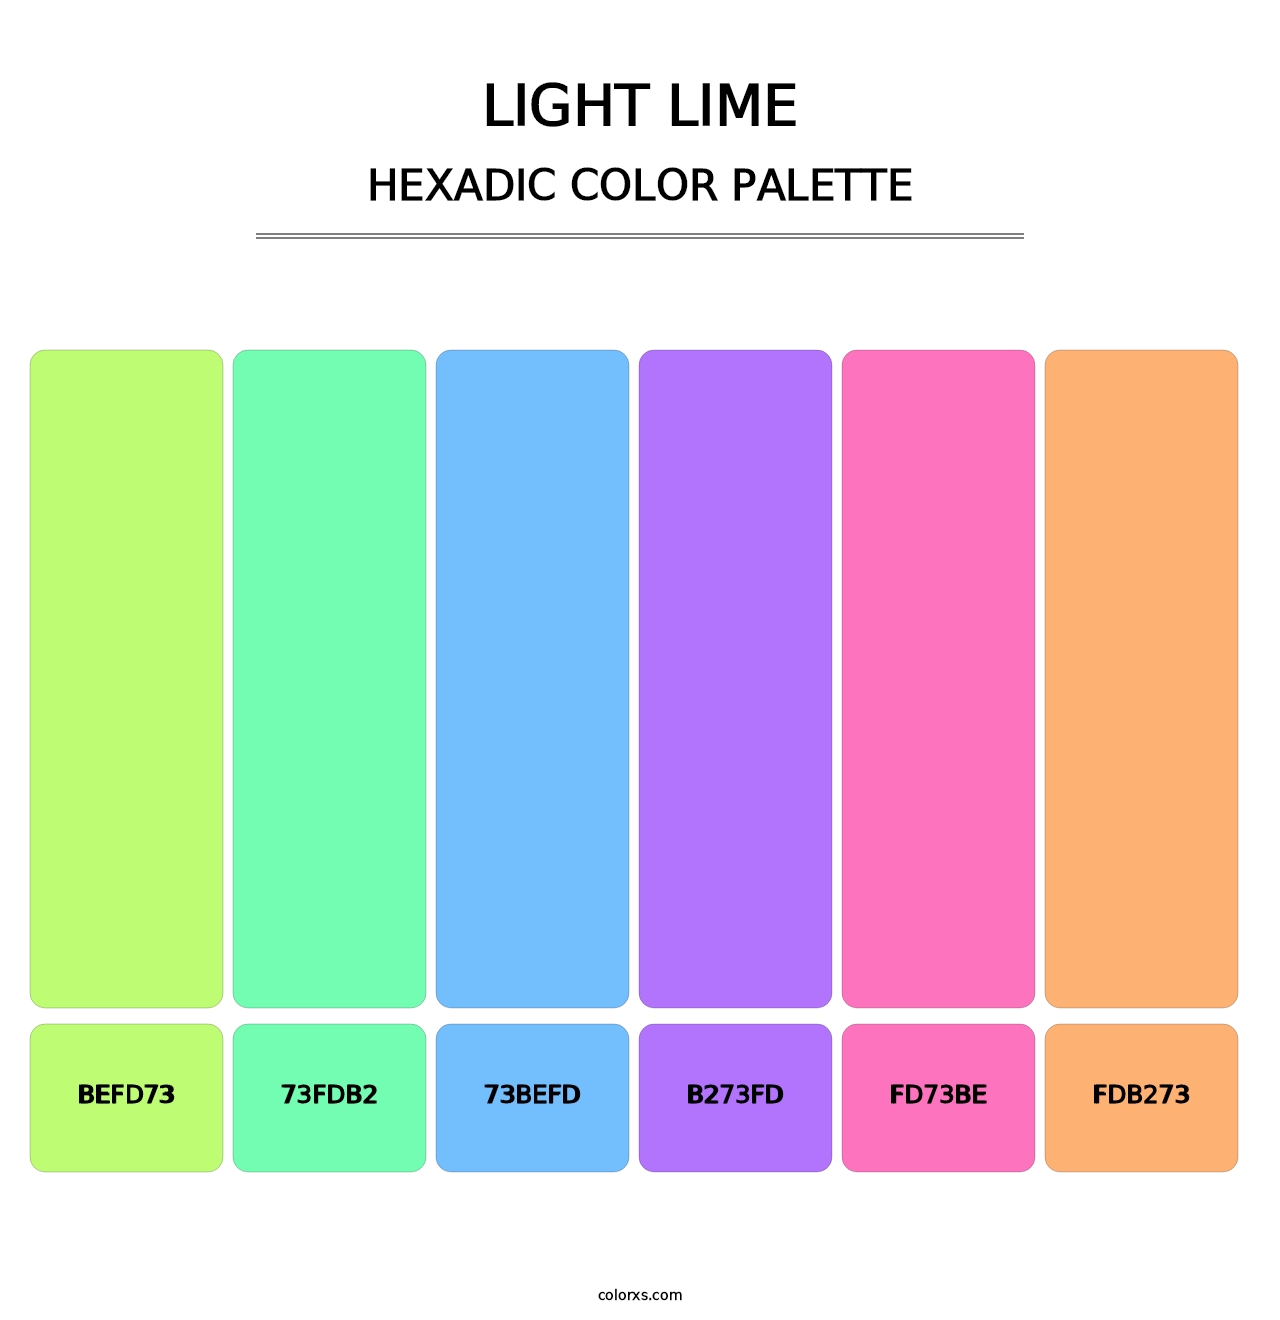 Light Lime - Hexadic Color Palette